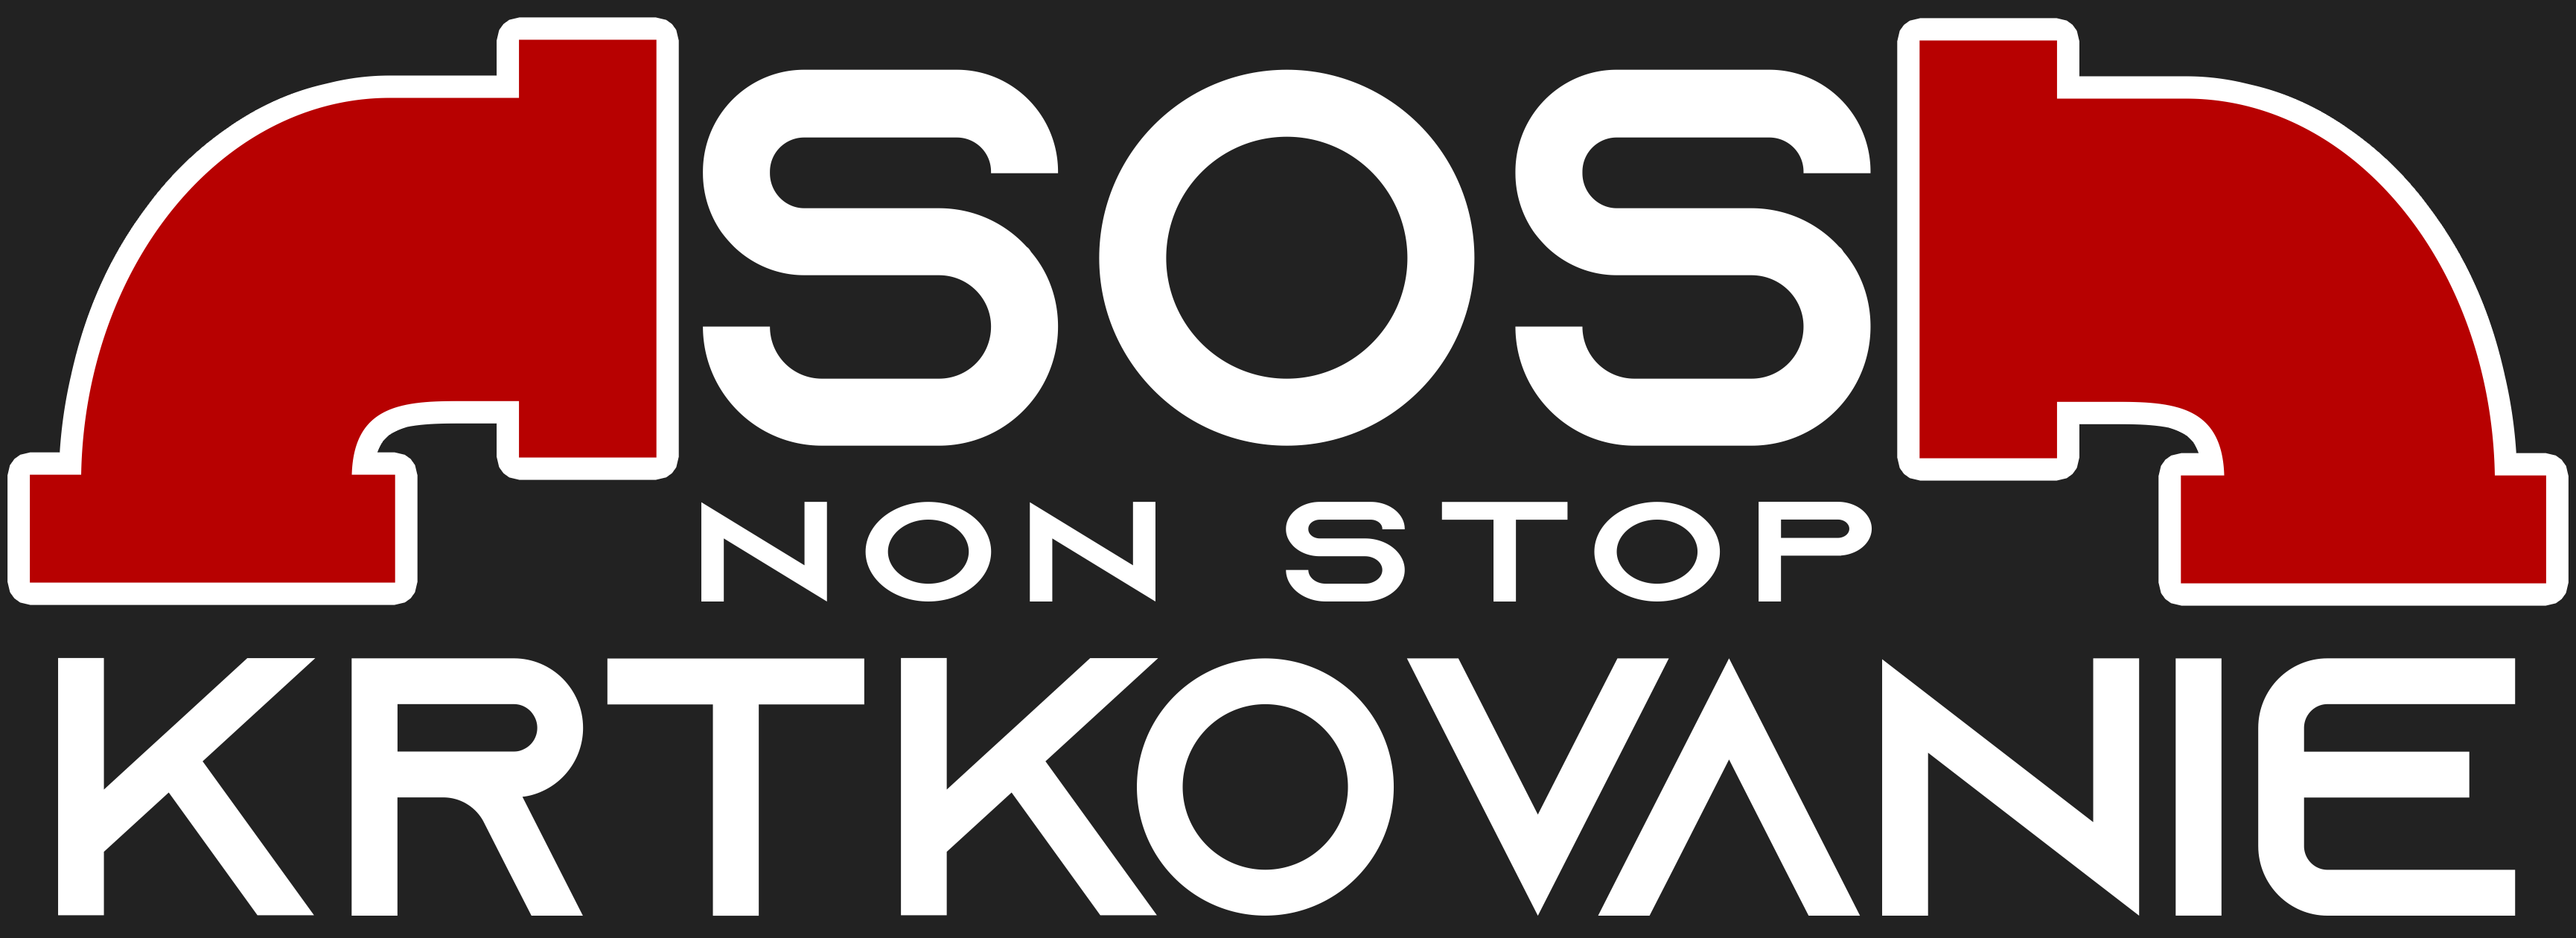 SOSkrtkovanie logo